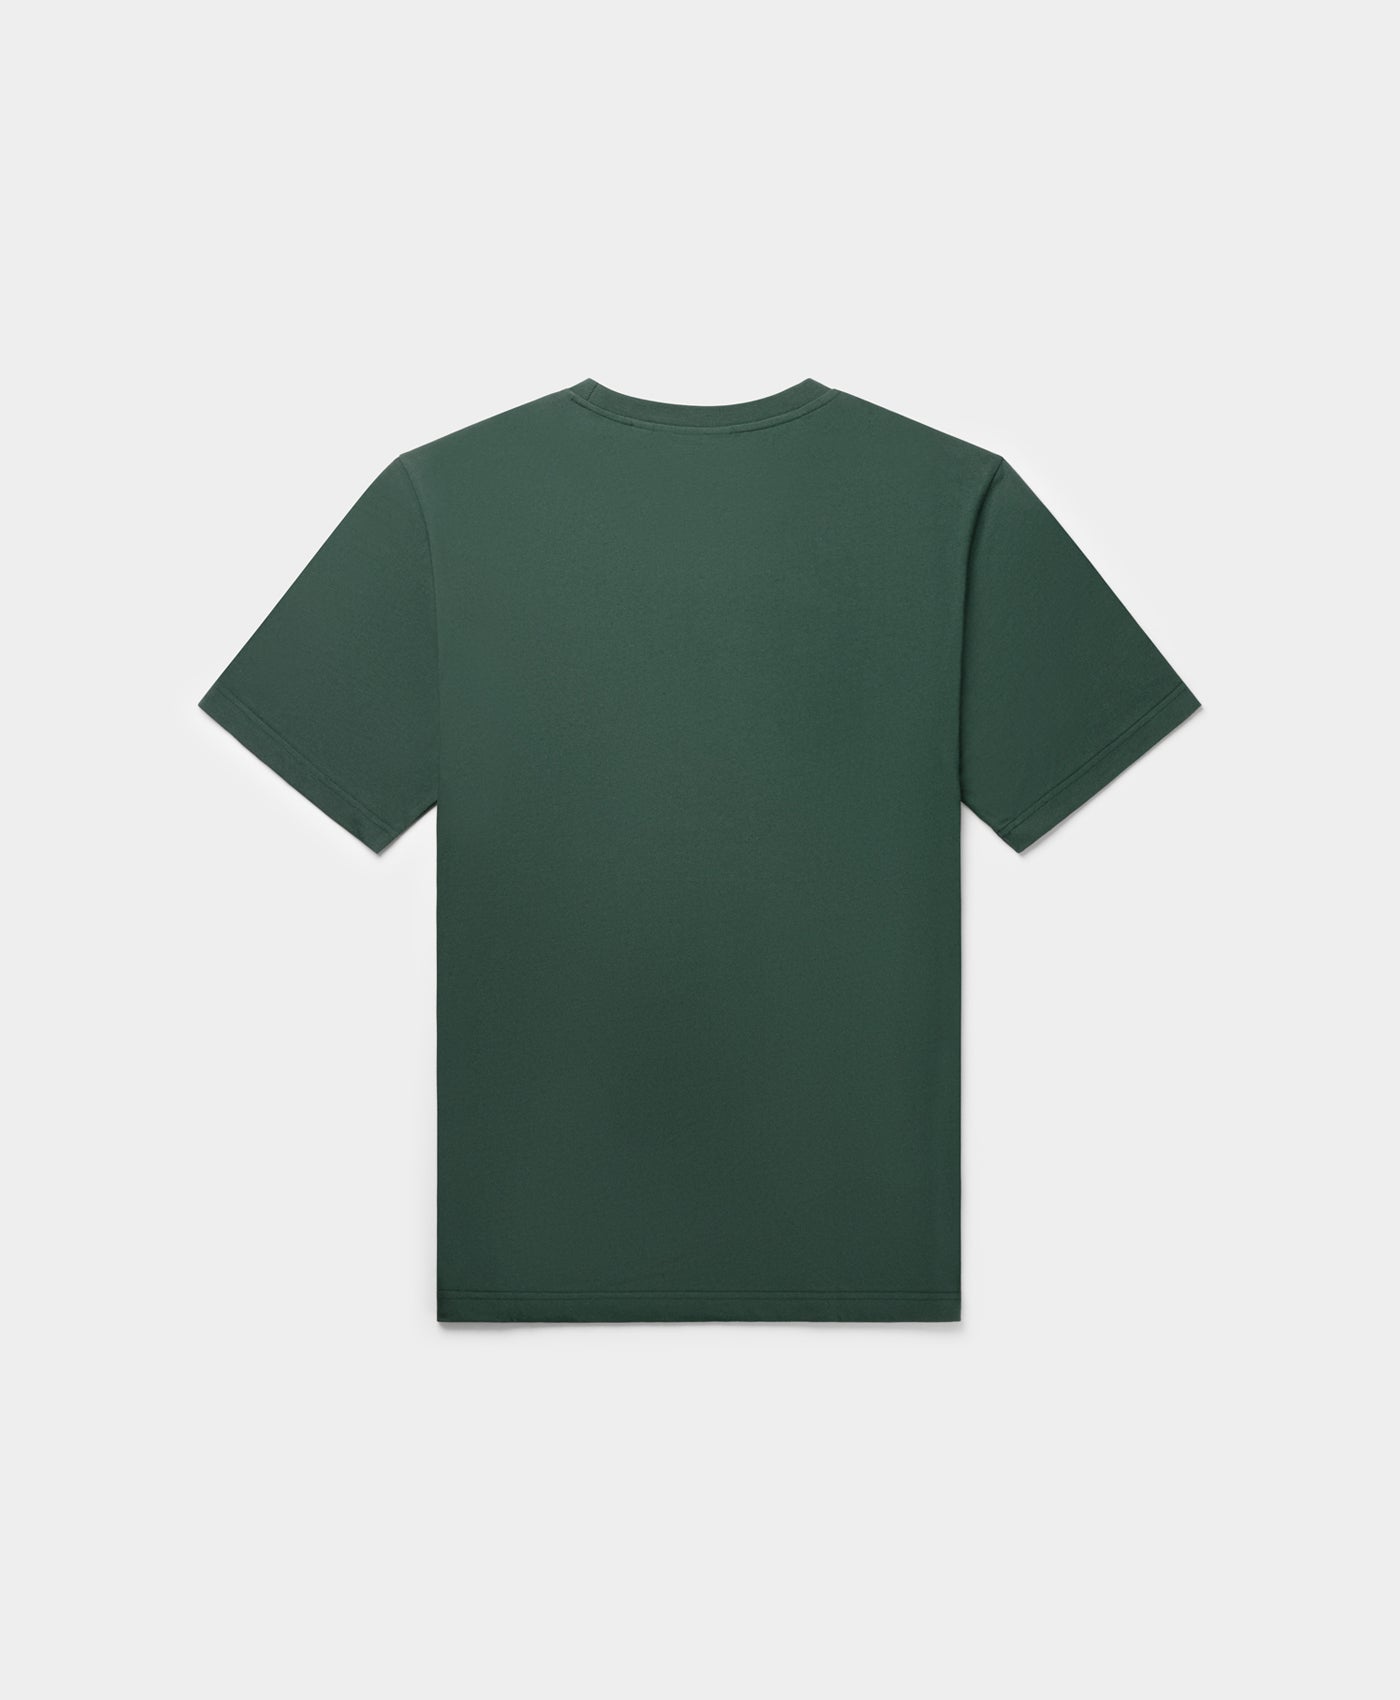 DP - Pine Green Circle T-Shirt - Packshot - Rear